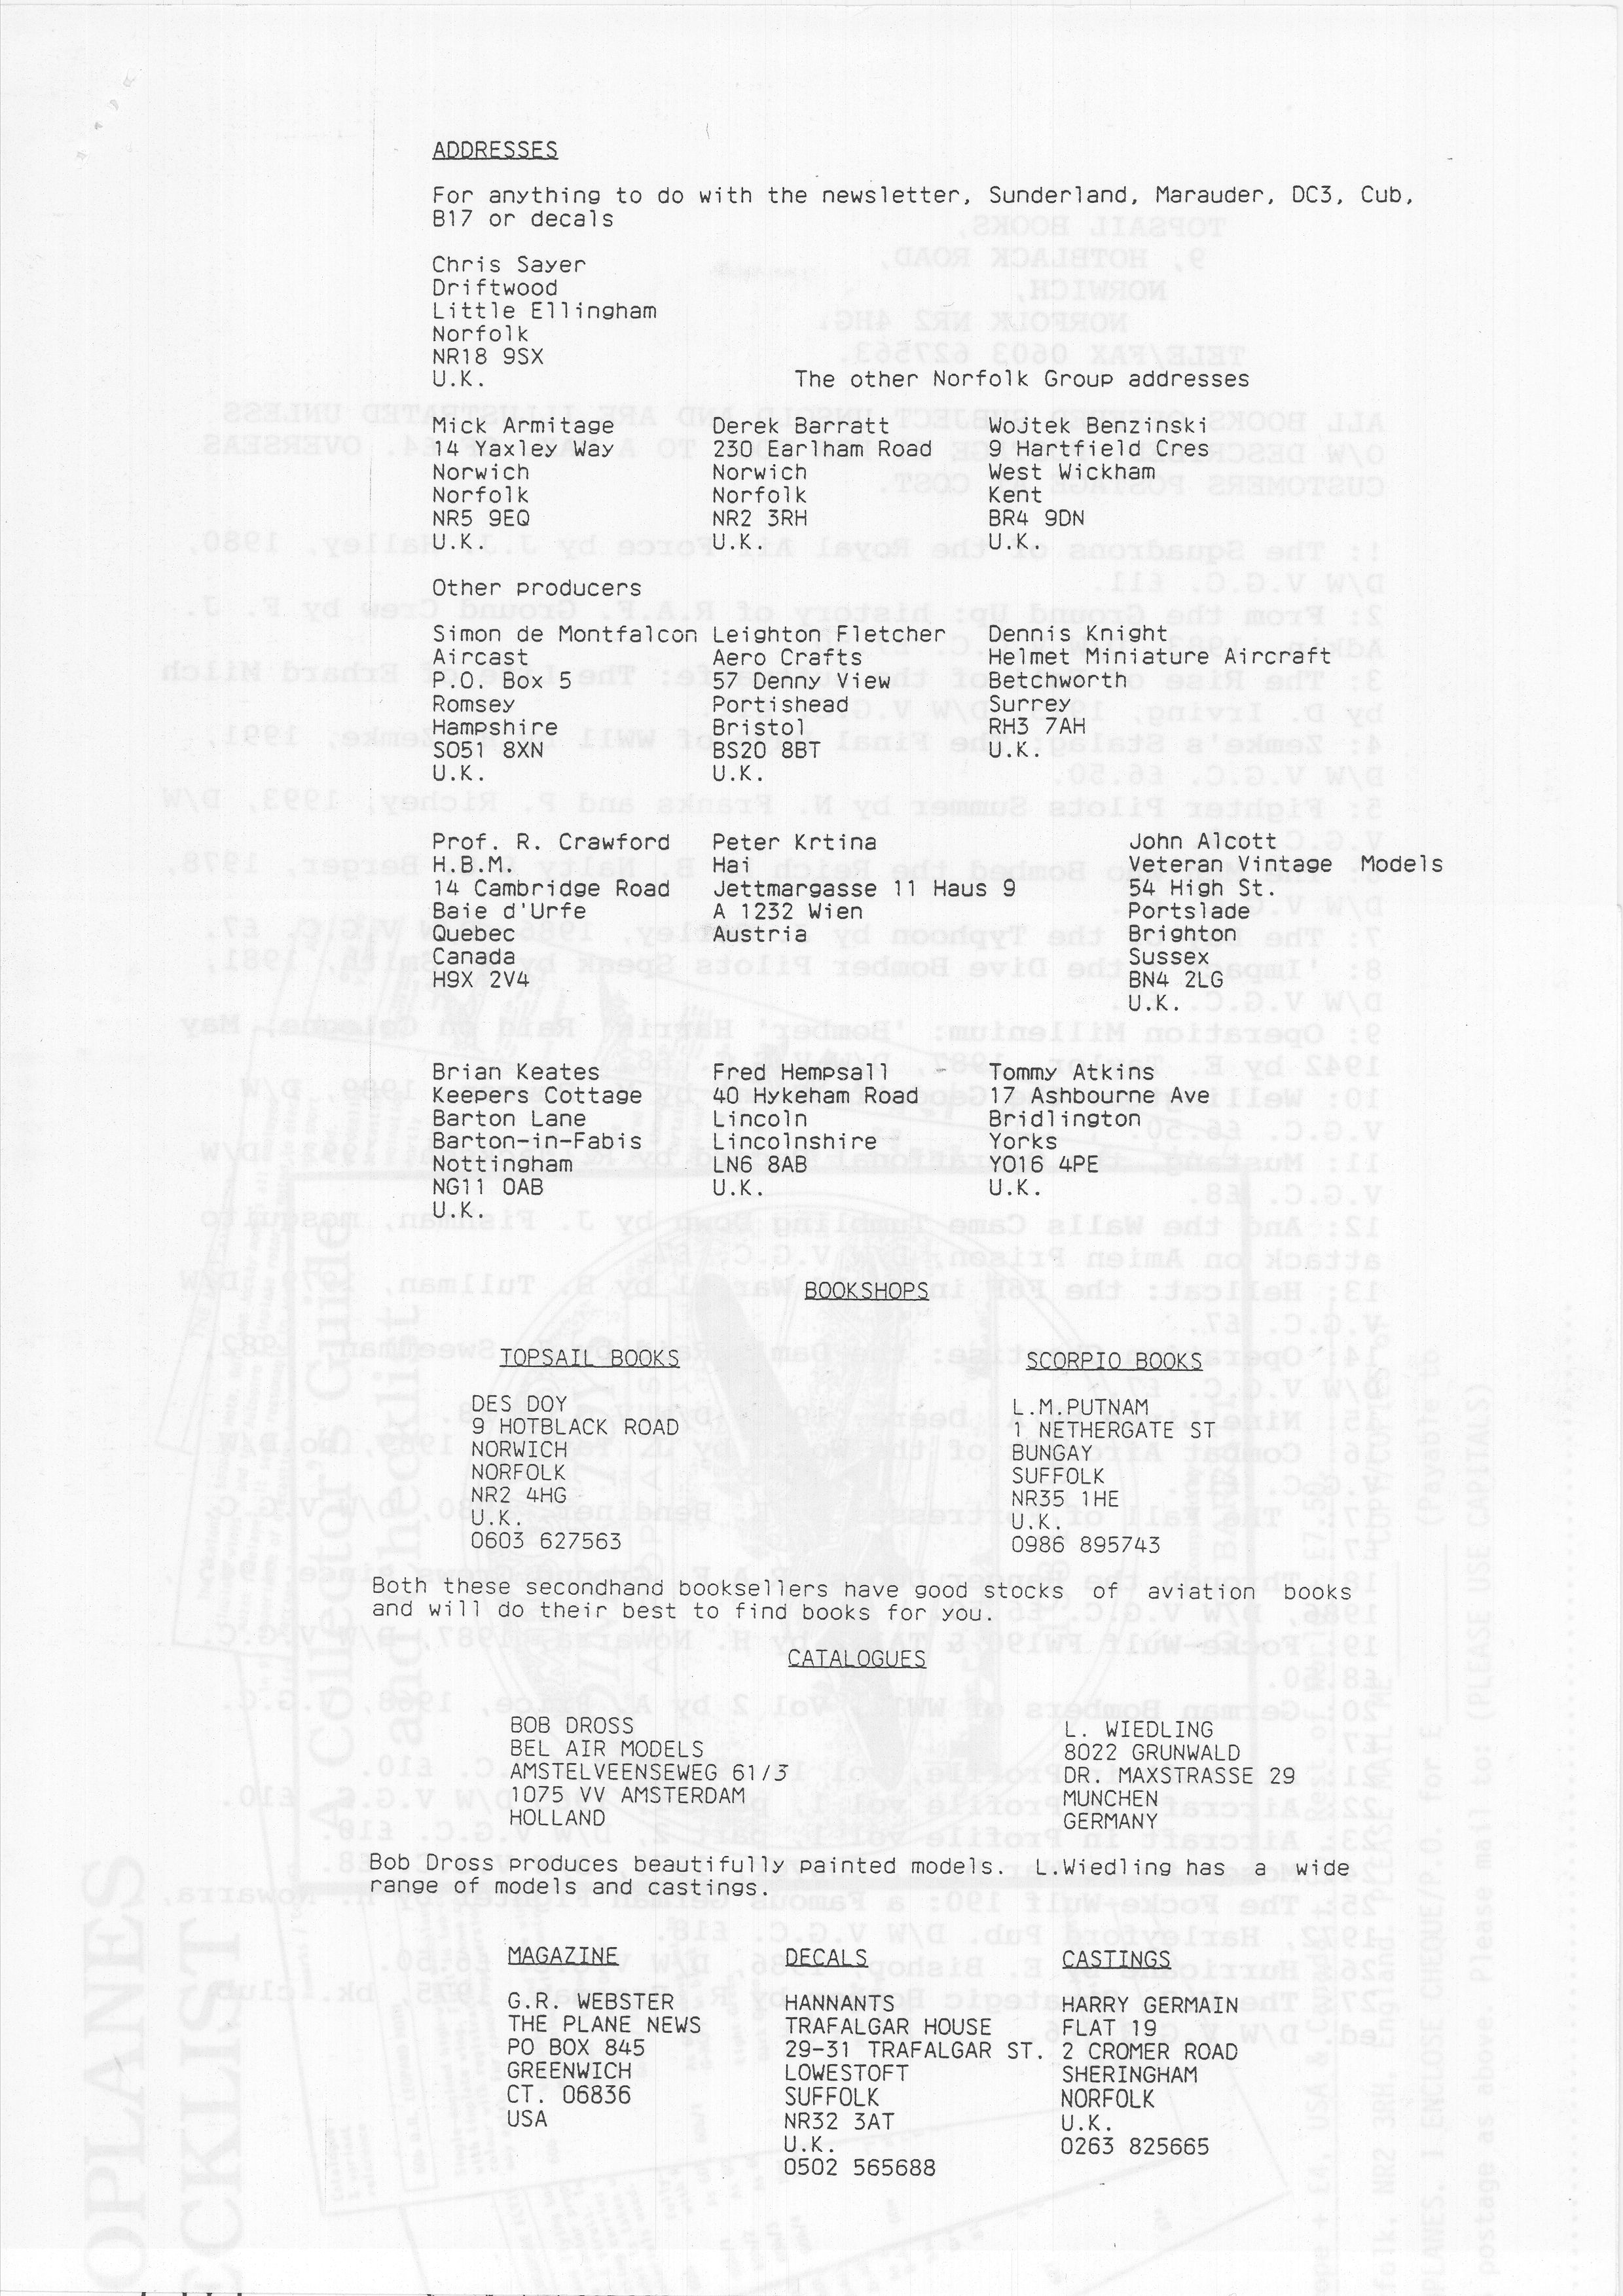 Norfolk Group_Newsletter No.4_November 199323.jpg